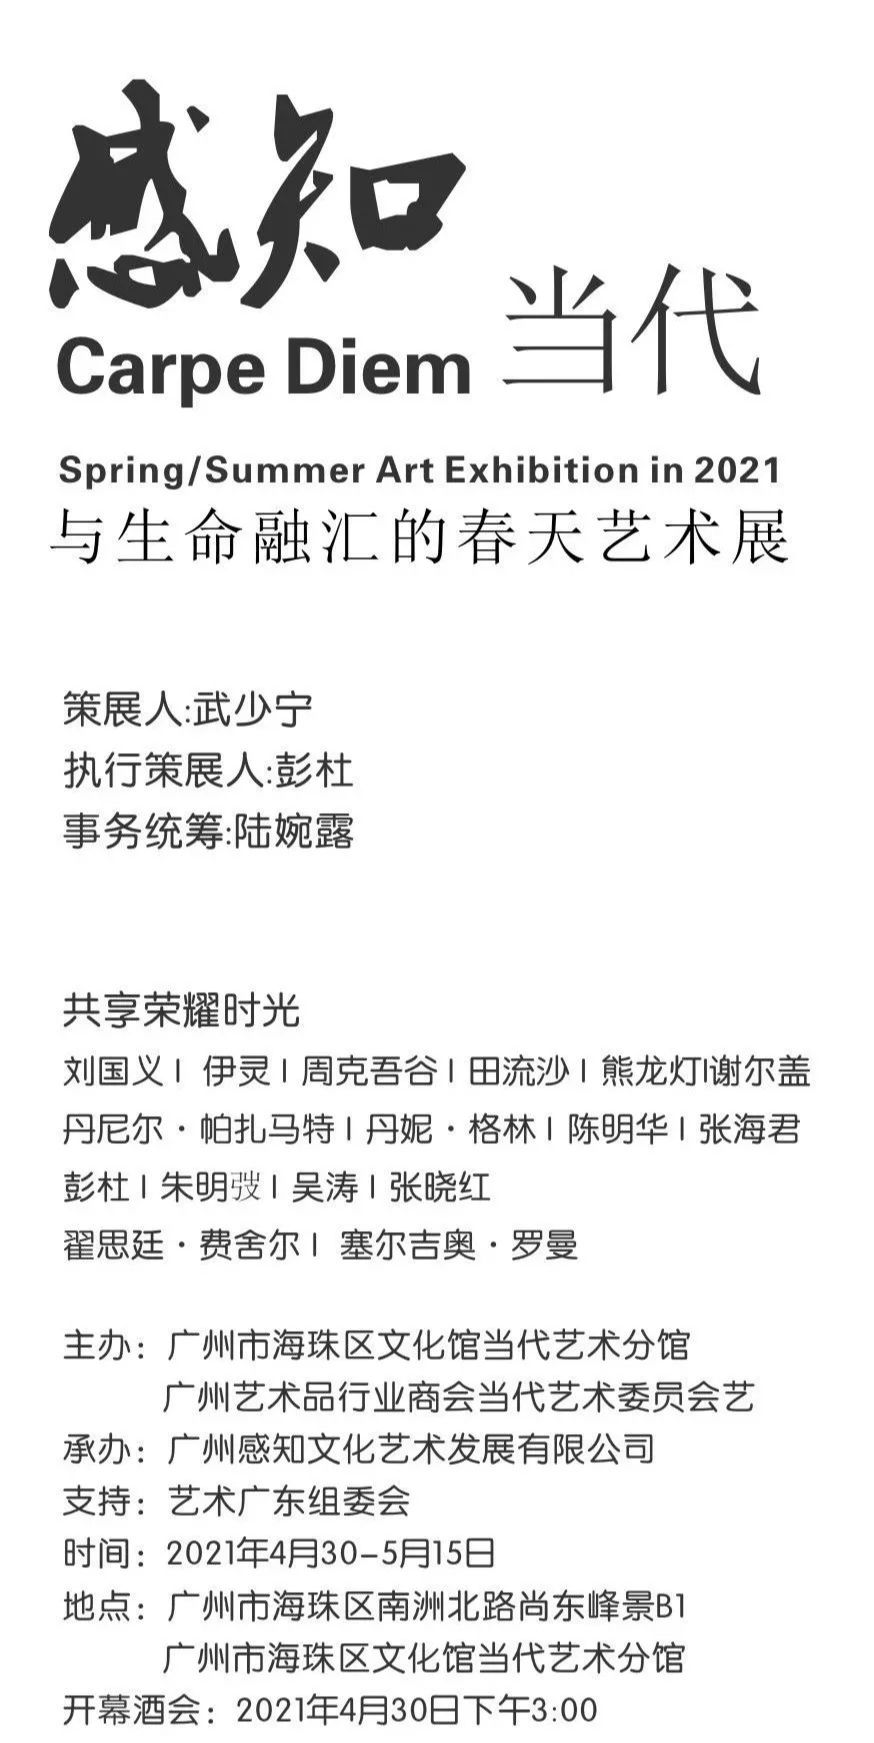 “感知当代 Carpe Diem”2021年的春夏艺术展